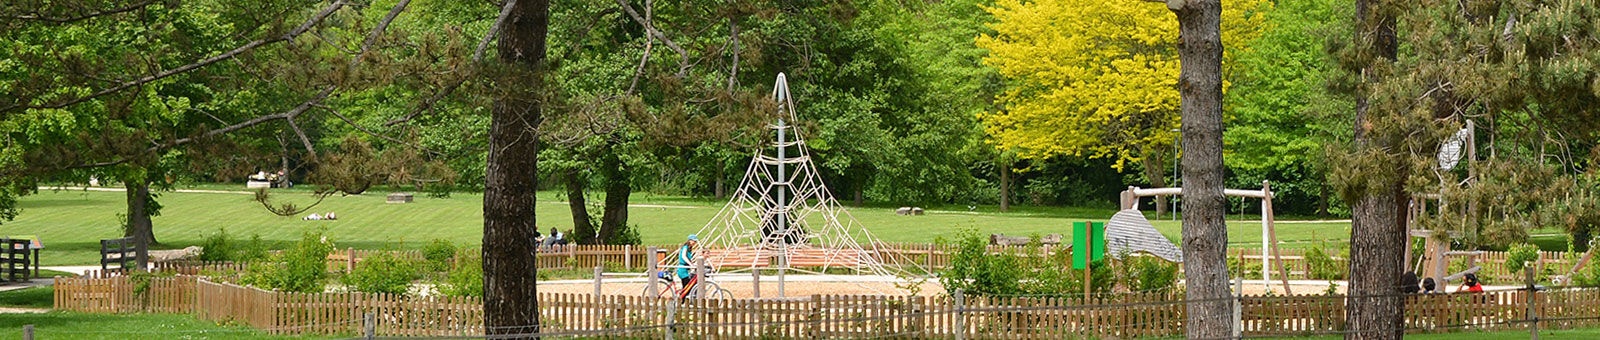 Parc et aire de jeux de Jaumeron dans le quartier de Courcelle, à Gif-sur-Yvette.